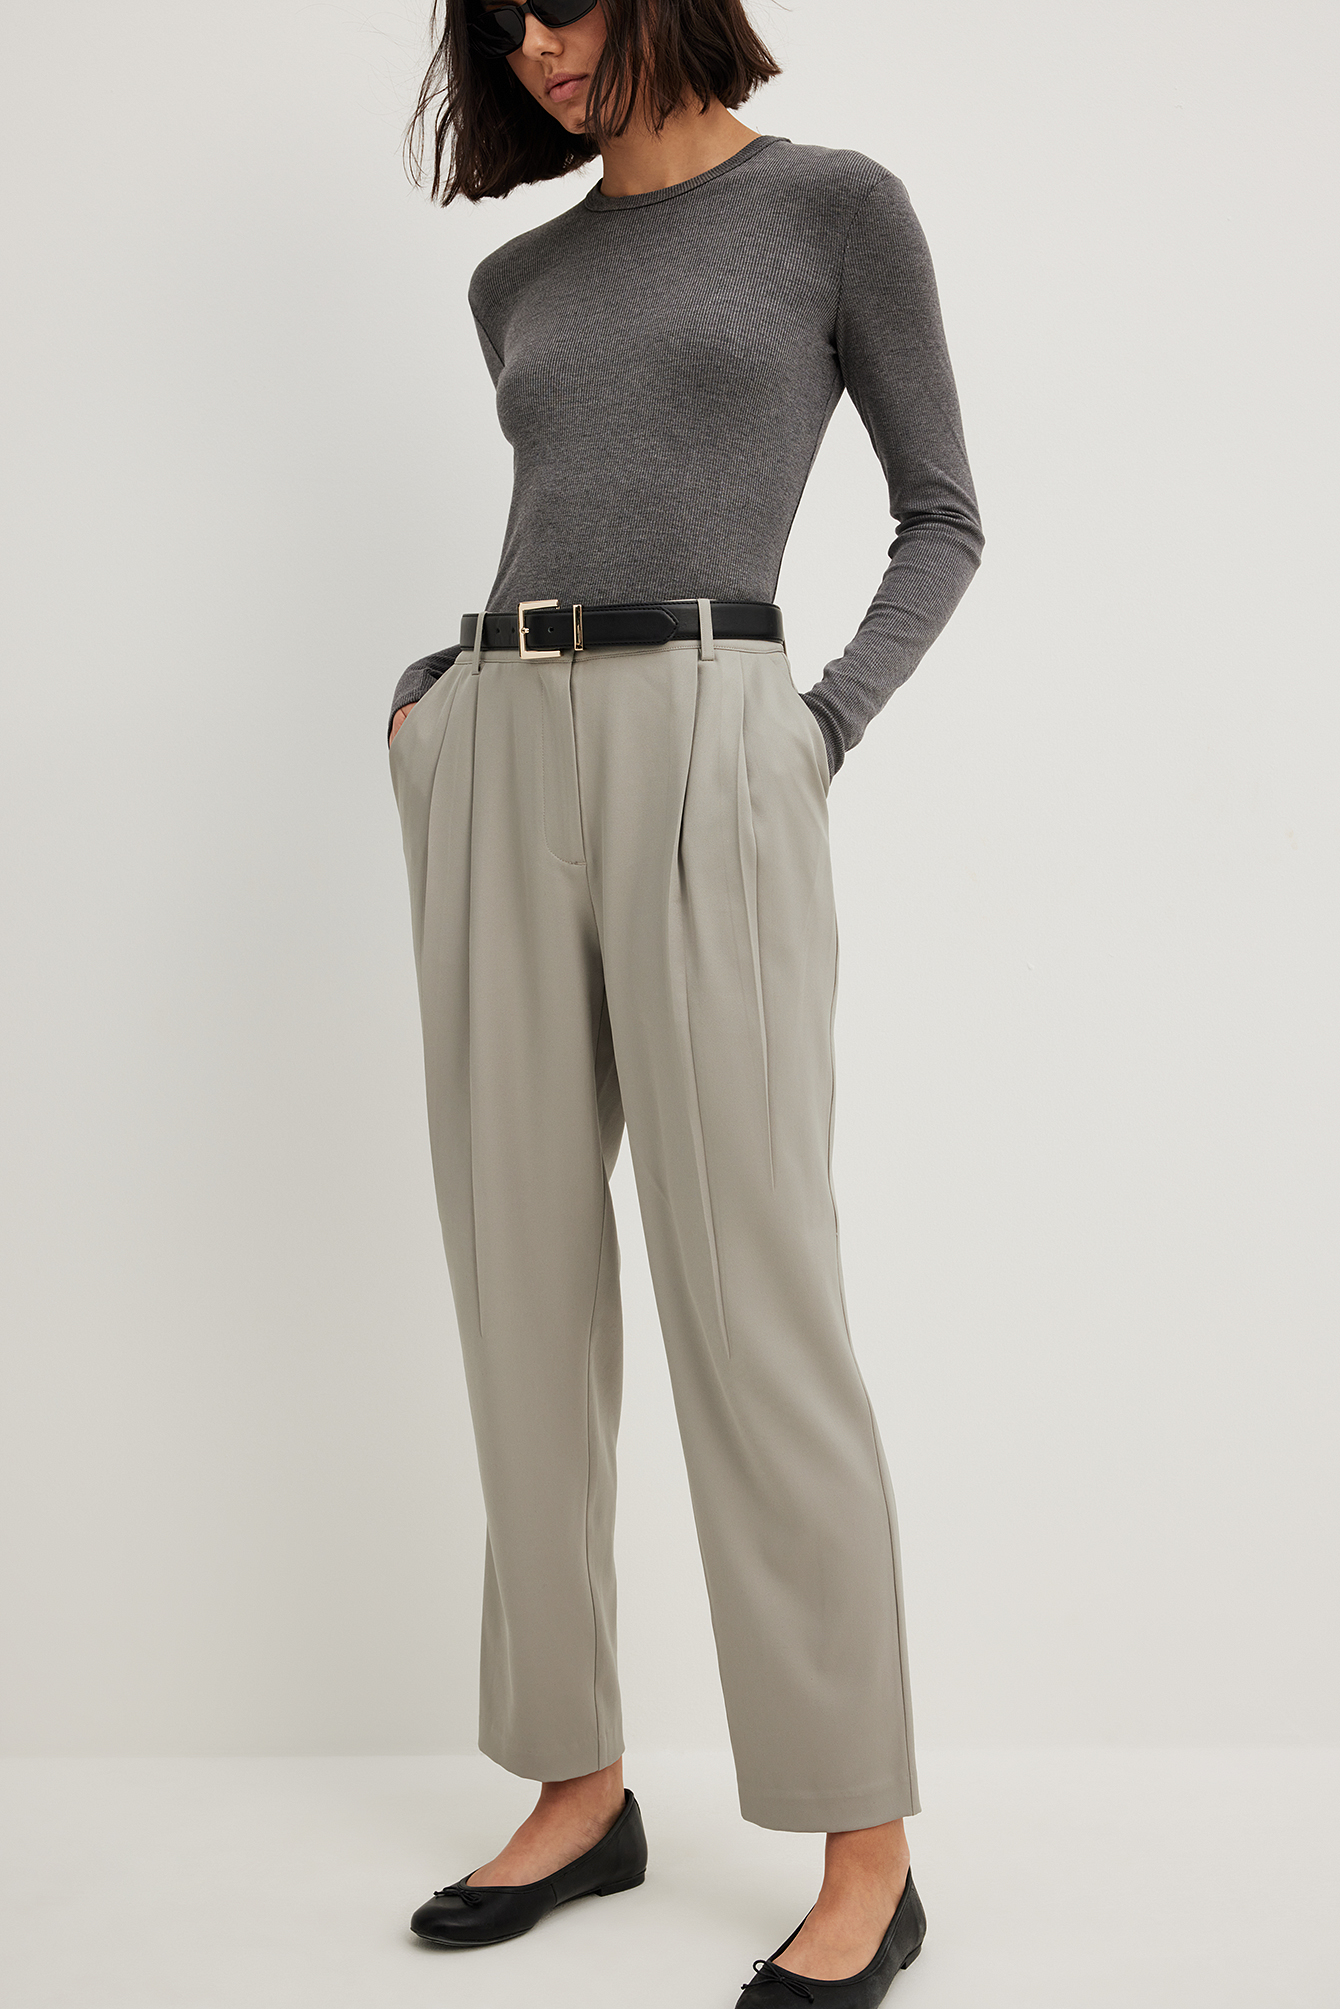 Buy Women Grey Check Formal Regular Fit Trousers Online - 729545 | Van  Heusen